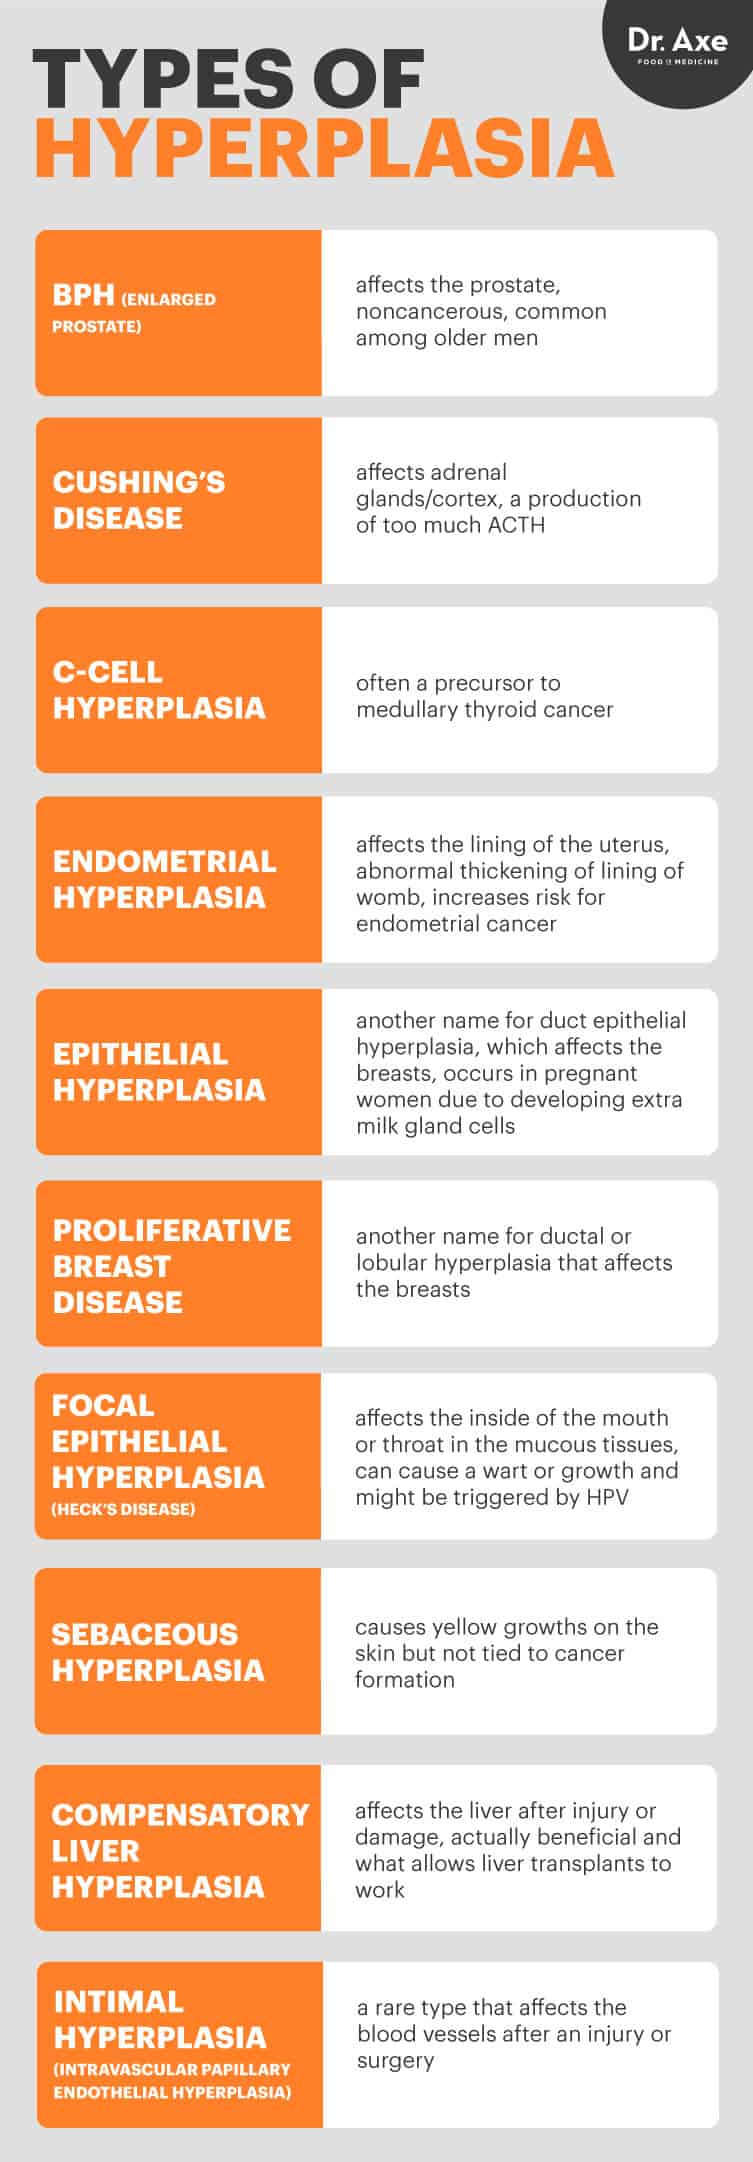 Types d'hyperplasie - Dr Axe